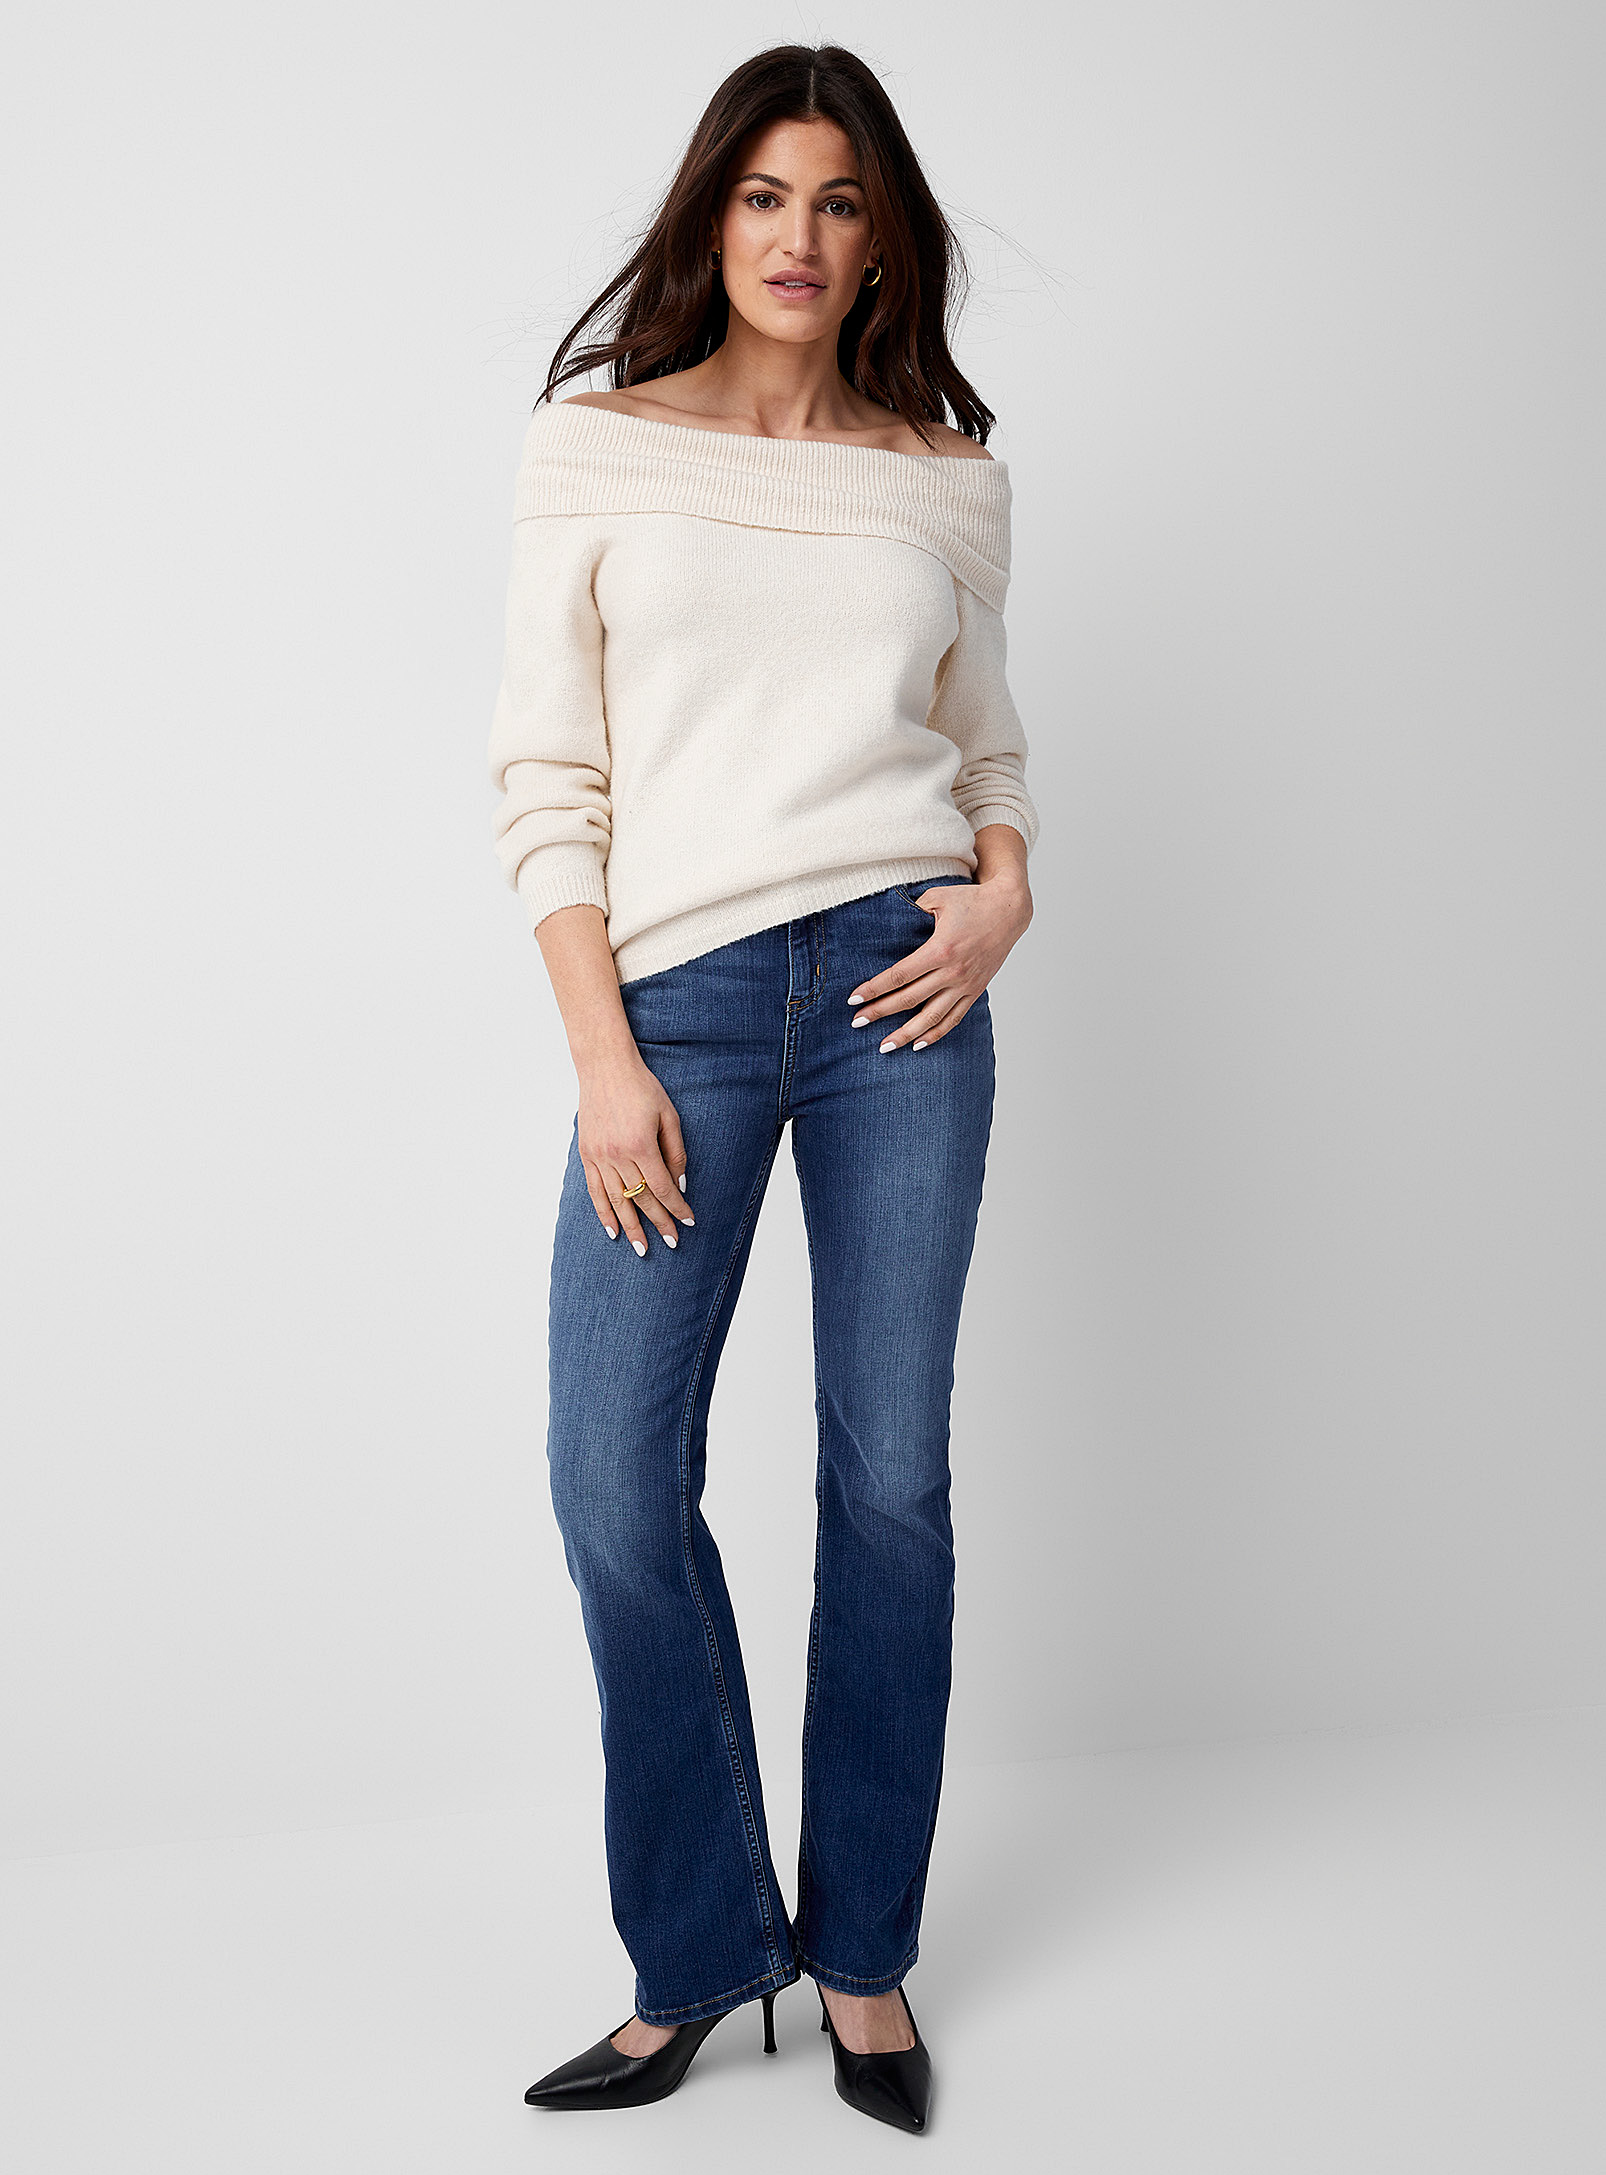 Yoga Jeans - Women's Medium indigo semi-flared jean